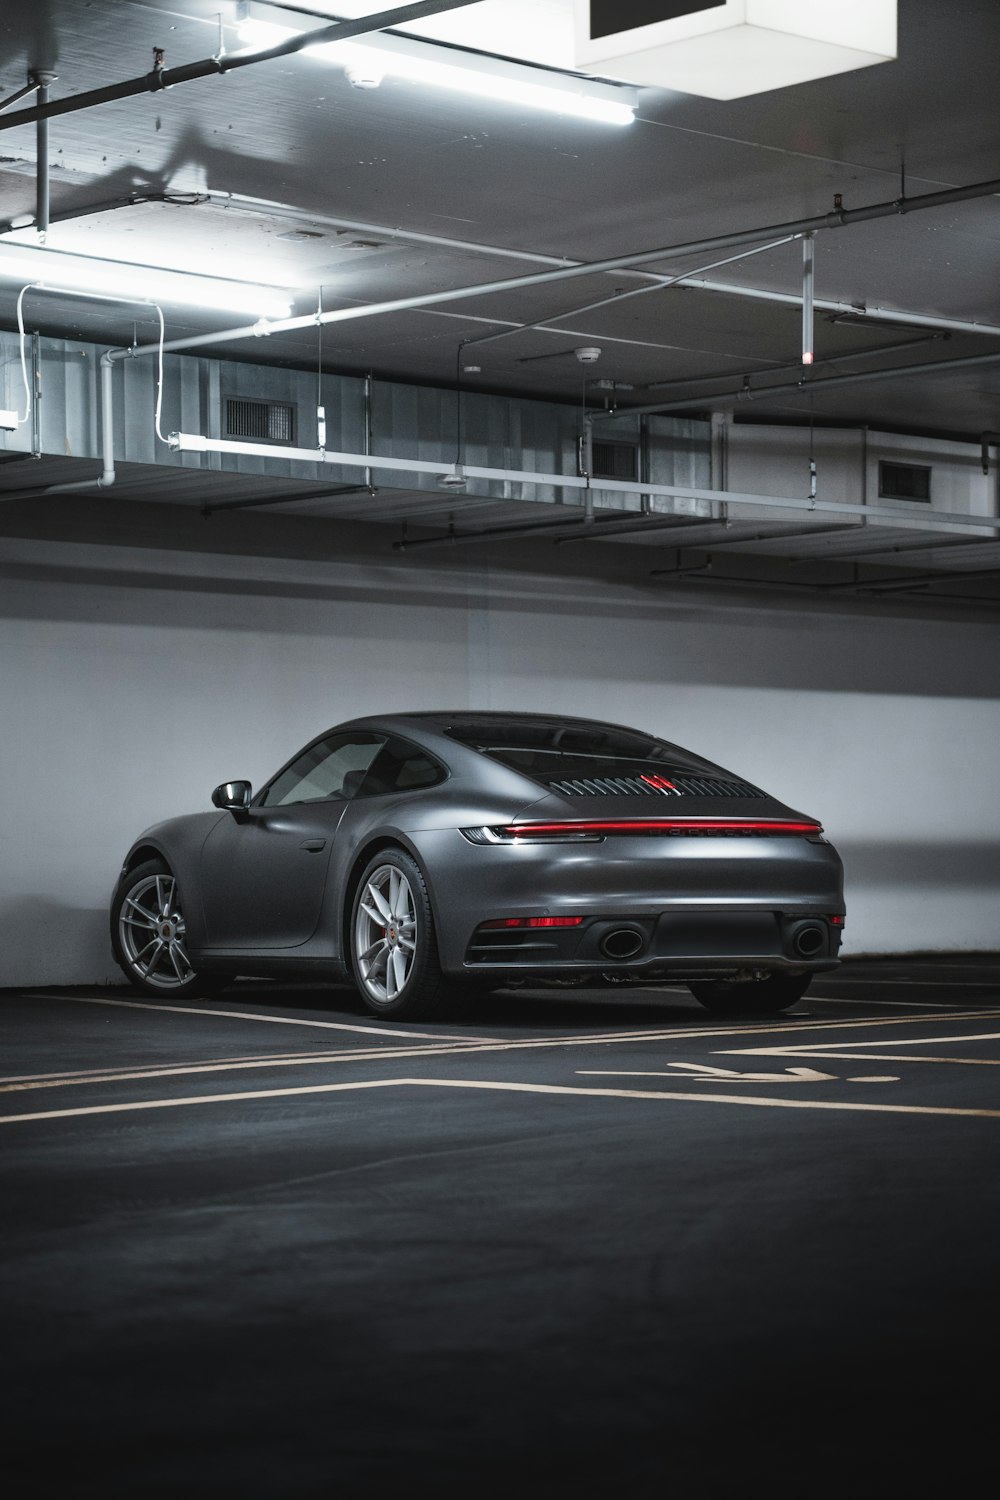 Silberner Porsche 911 auf einem Parkplatz geparkt